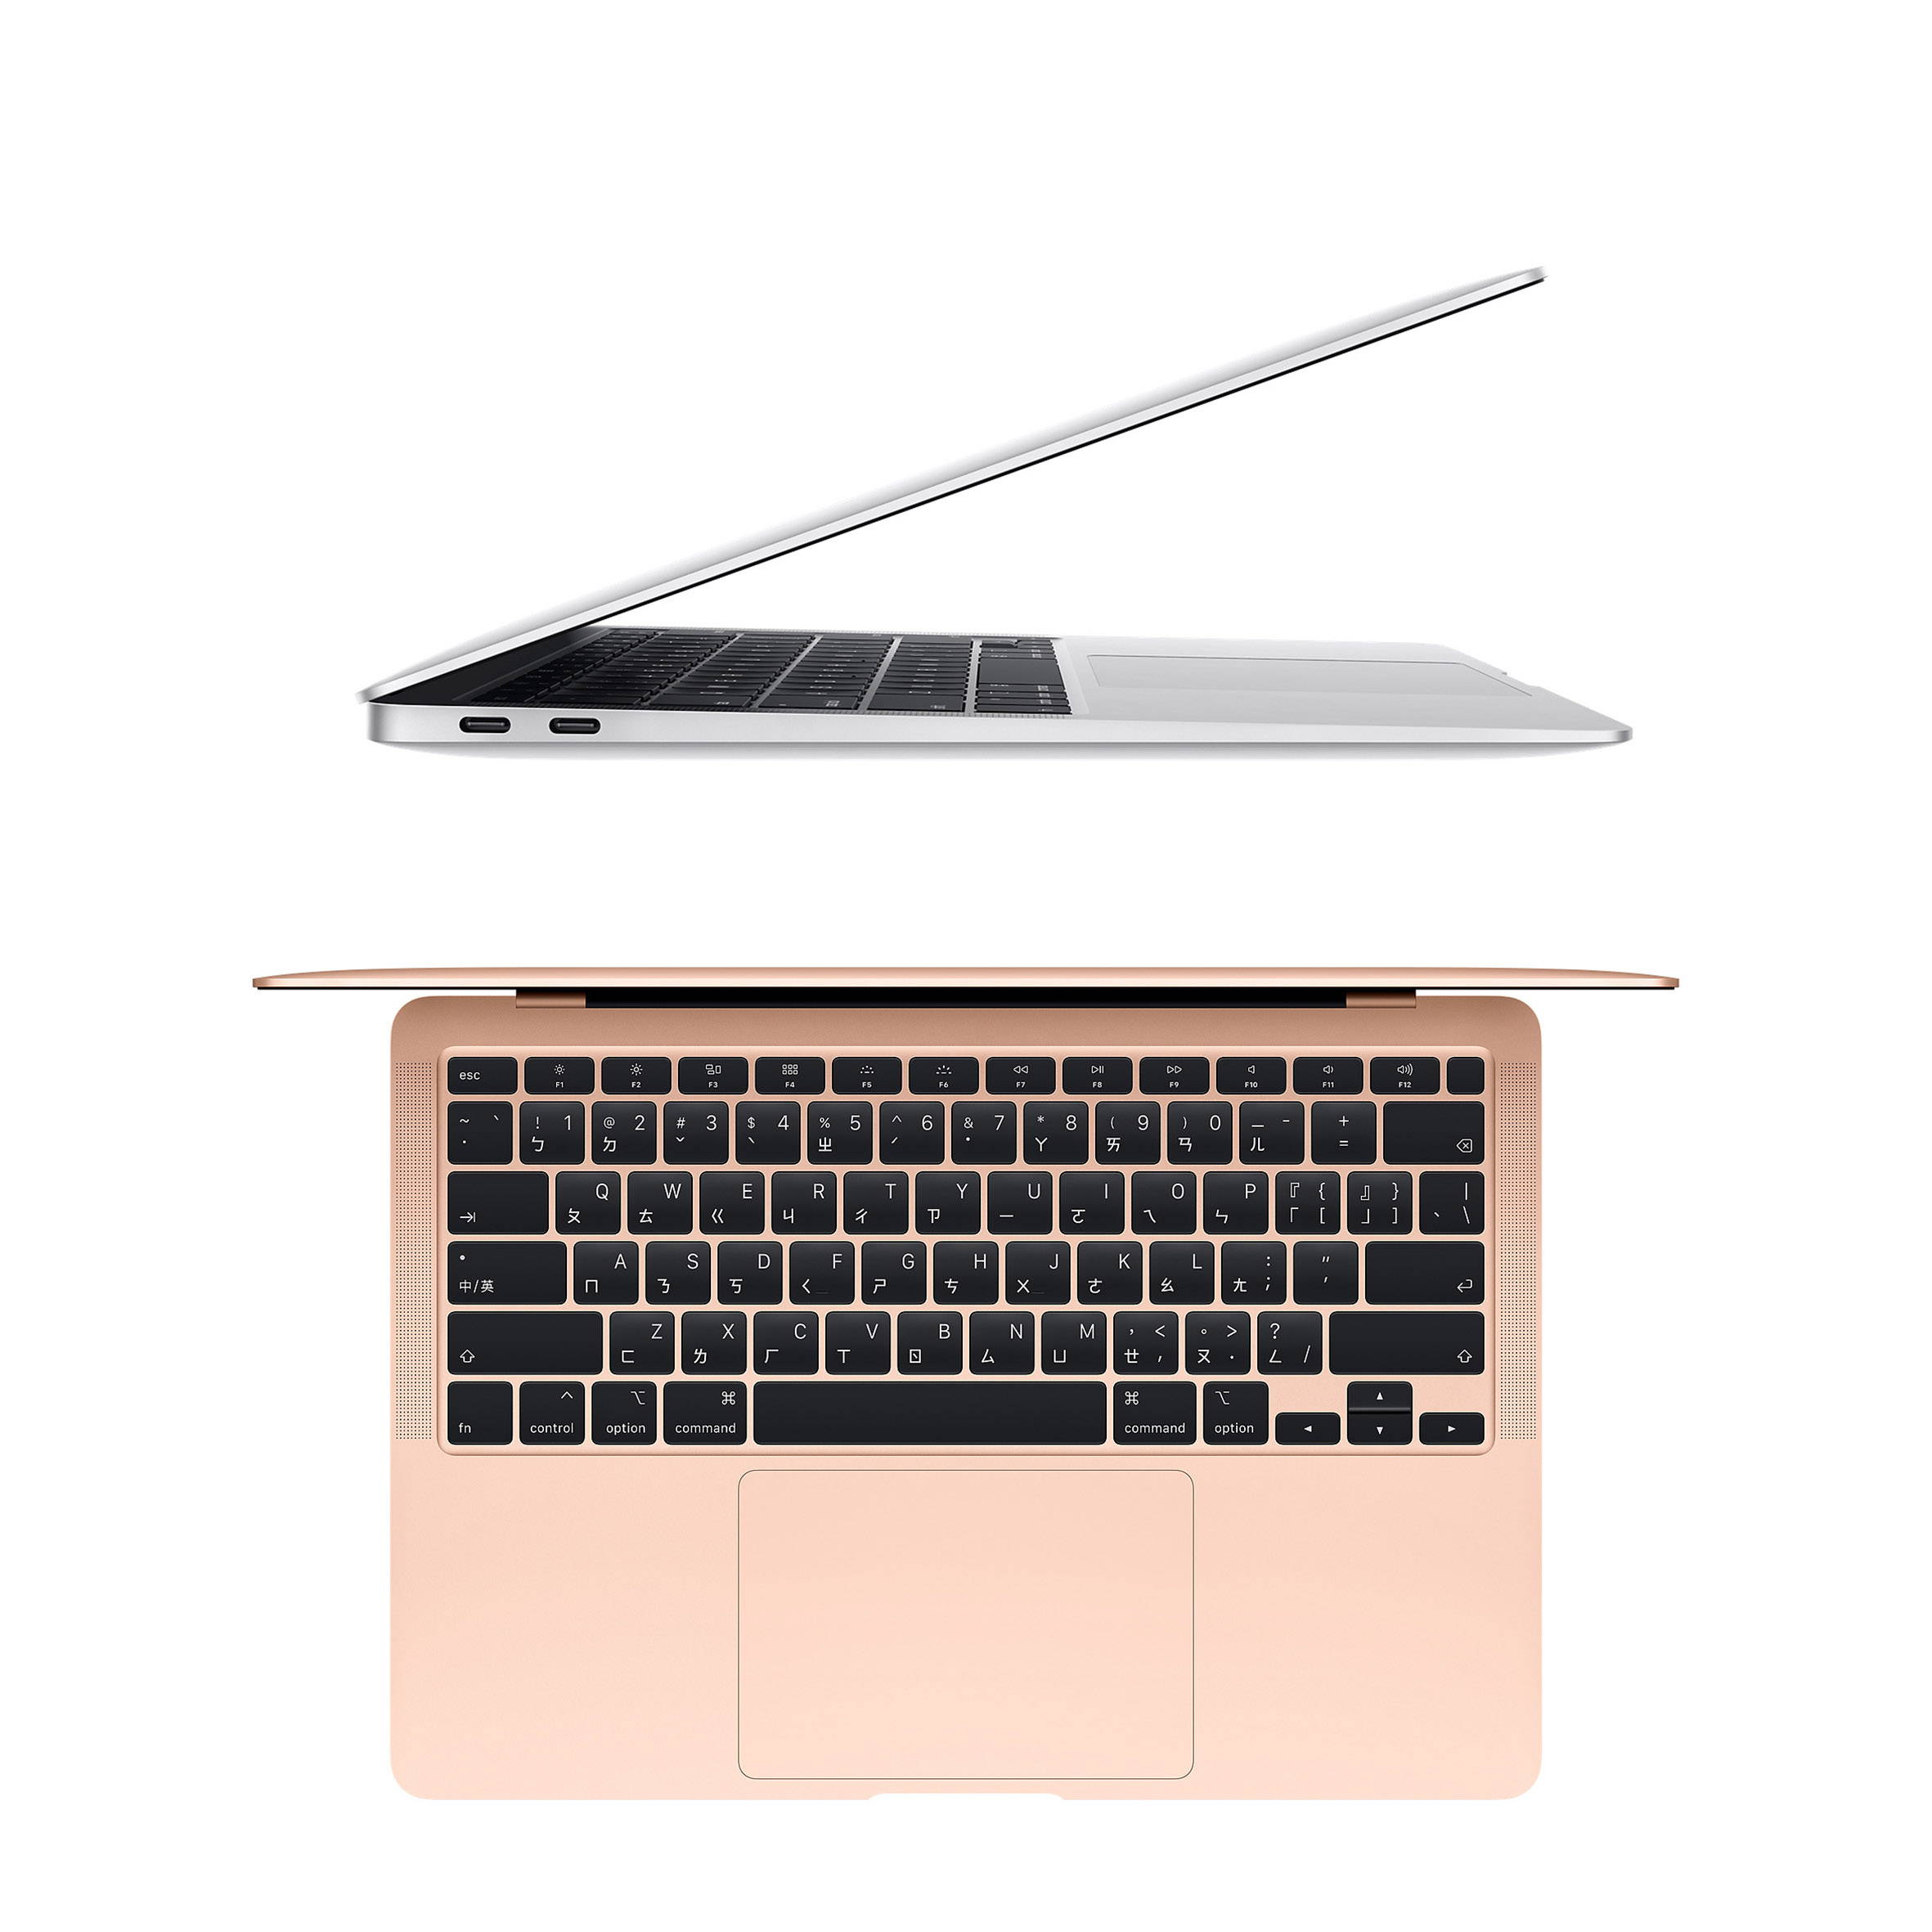 MacBook Air 13吋 512GB (2020年新款)